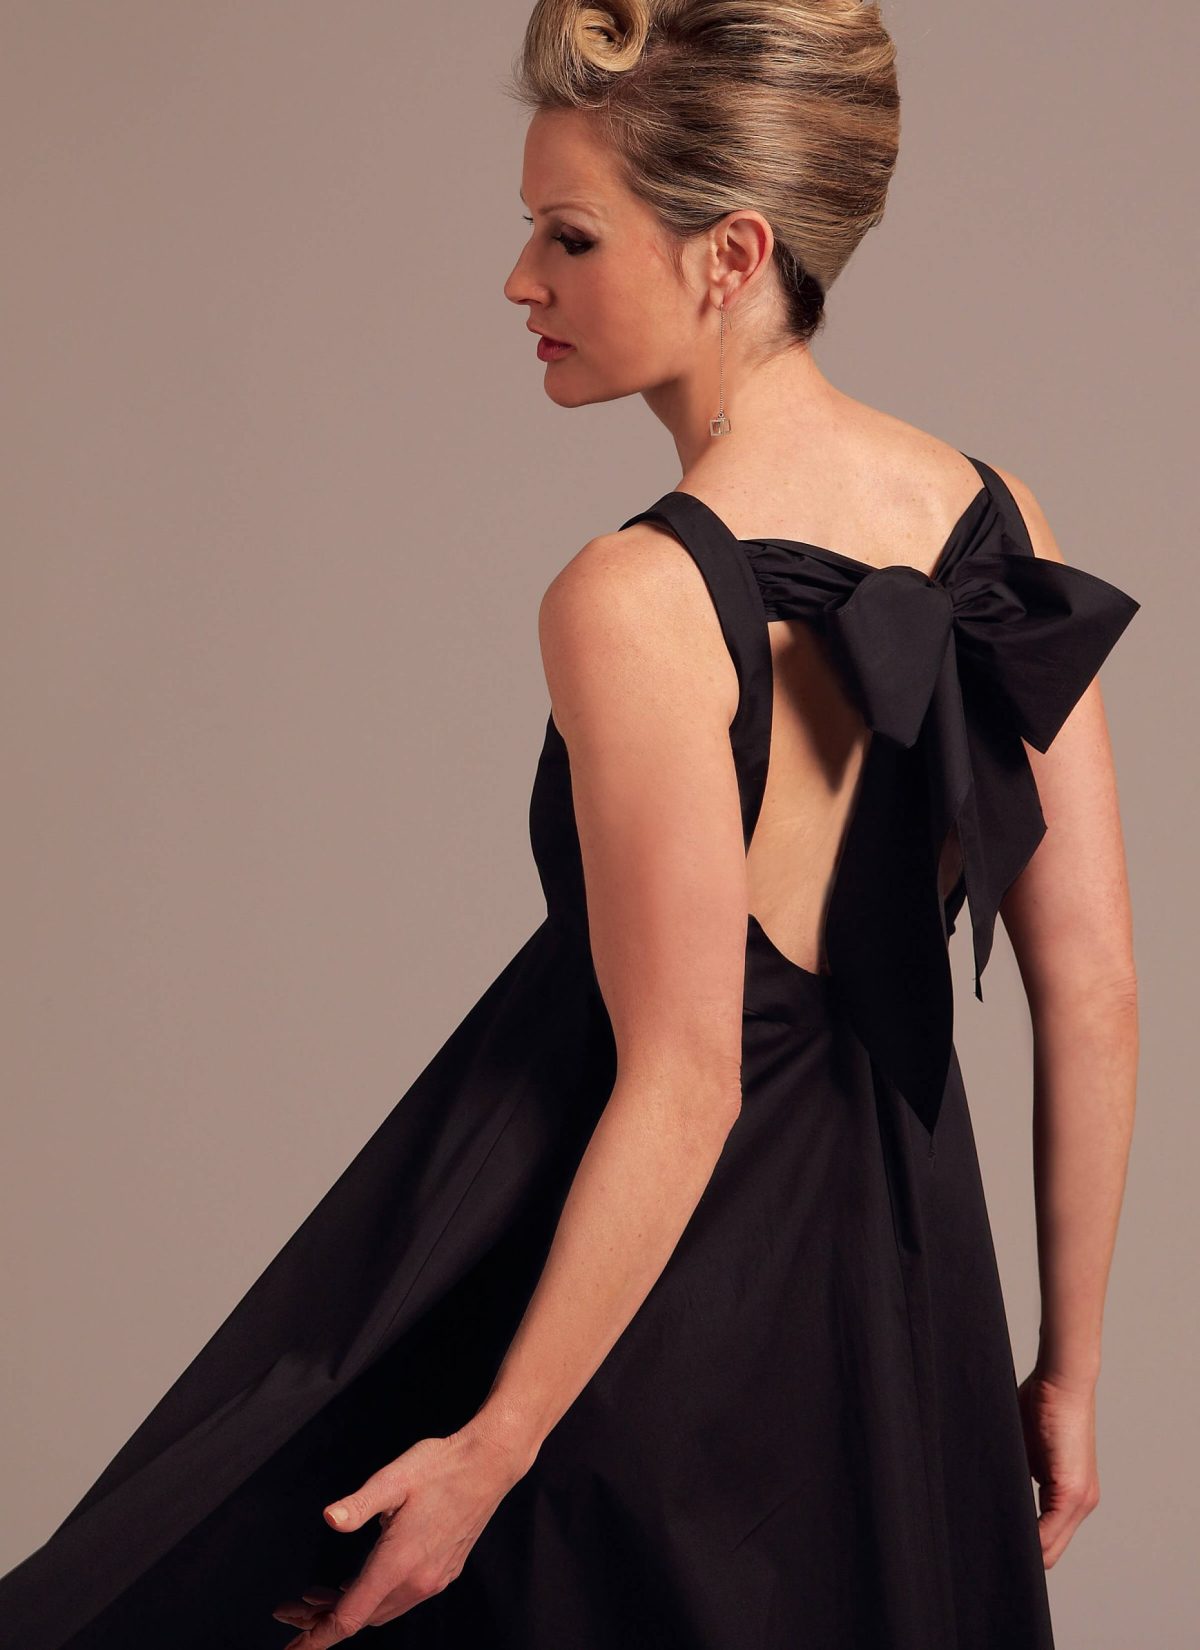 Vogue Patterns V1102 Misses' Dress